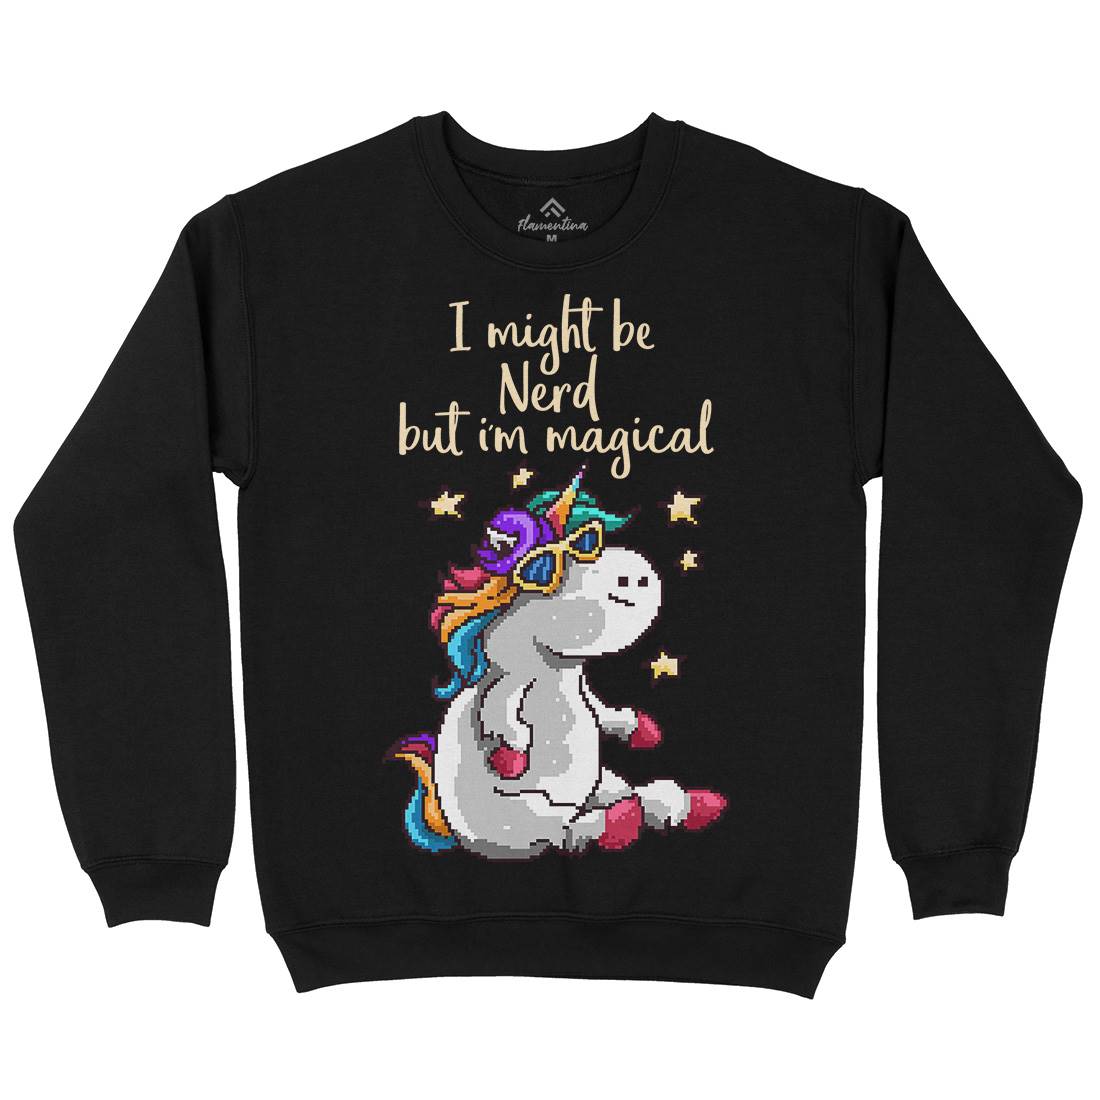 Nerd And Magical Kids Crew Neck Sweatshirt Retro B938